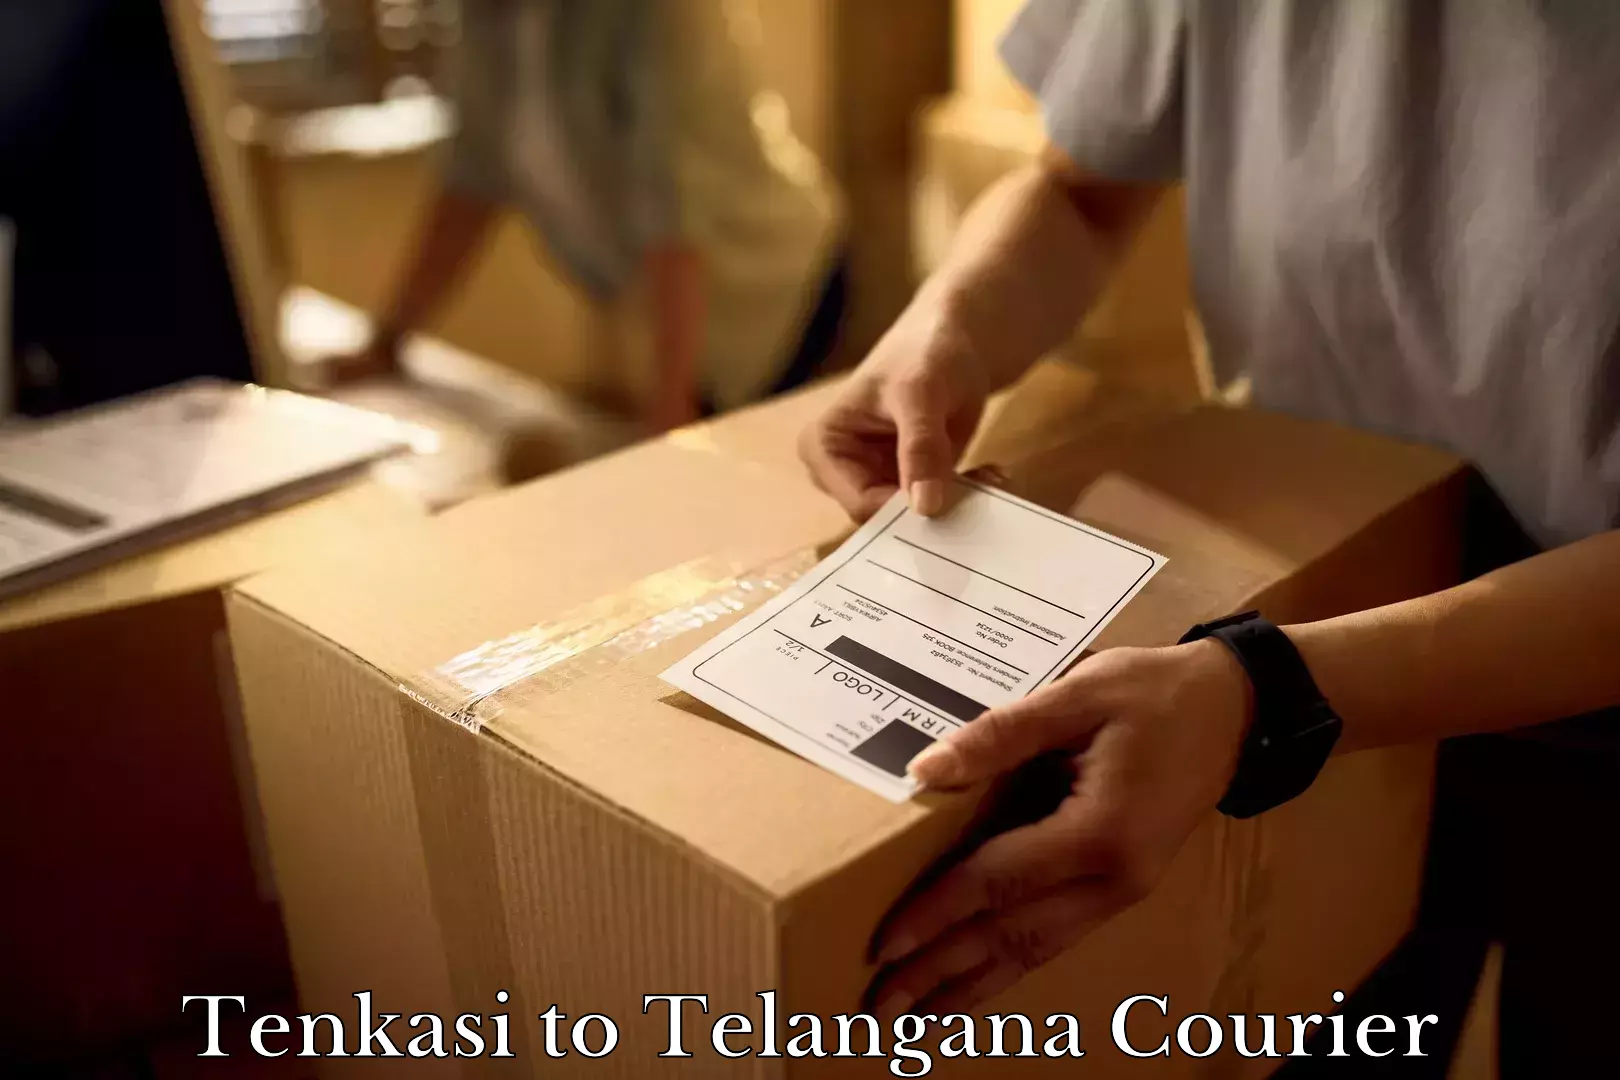 Home moving experts Tenkasi to Karimnagar